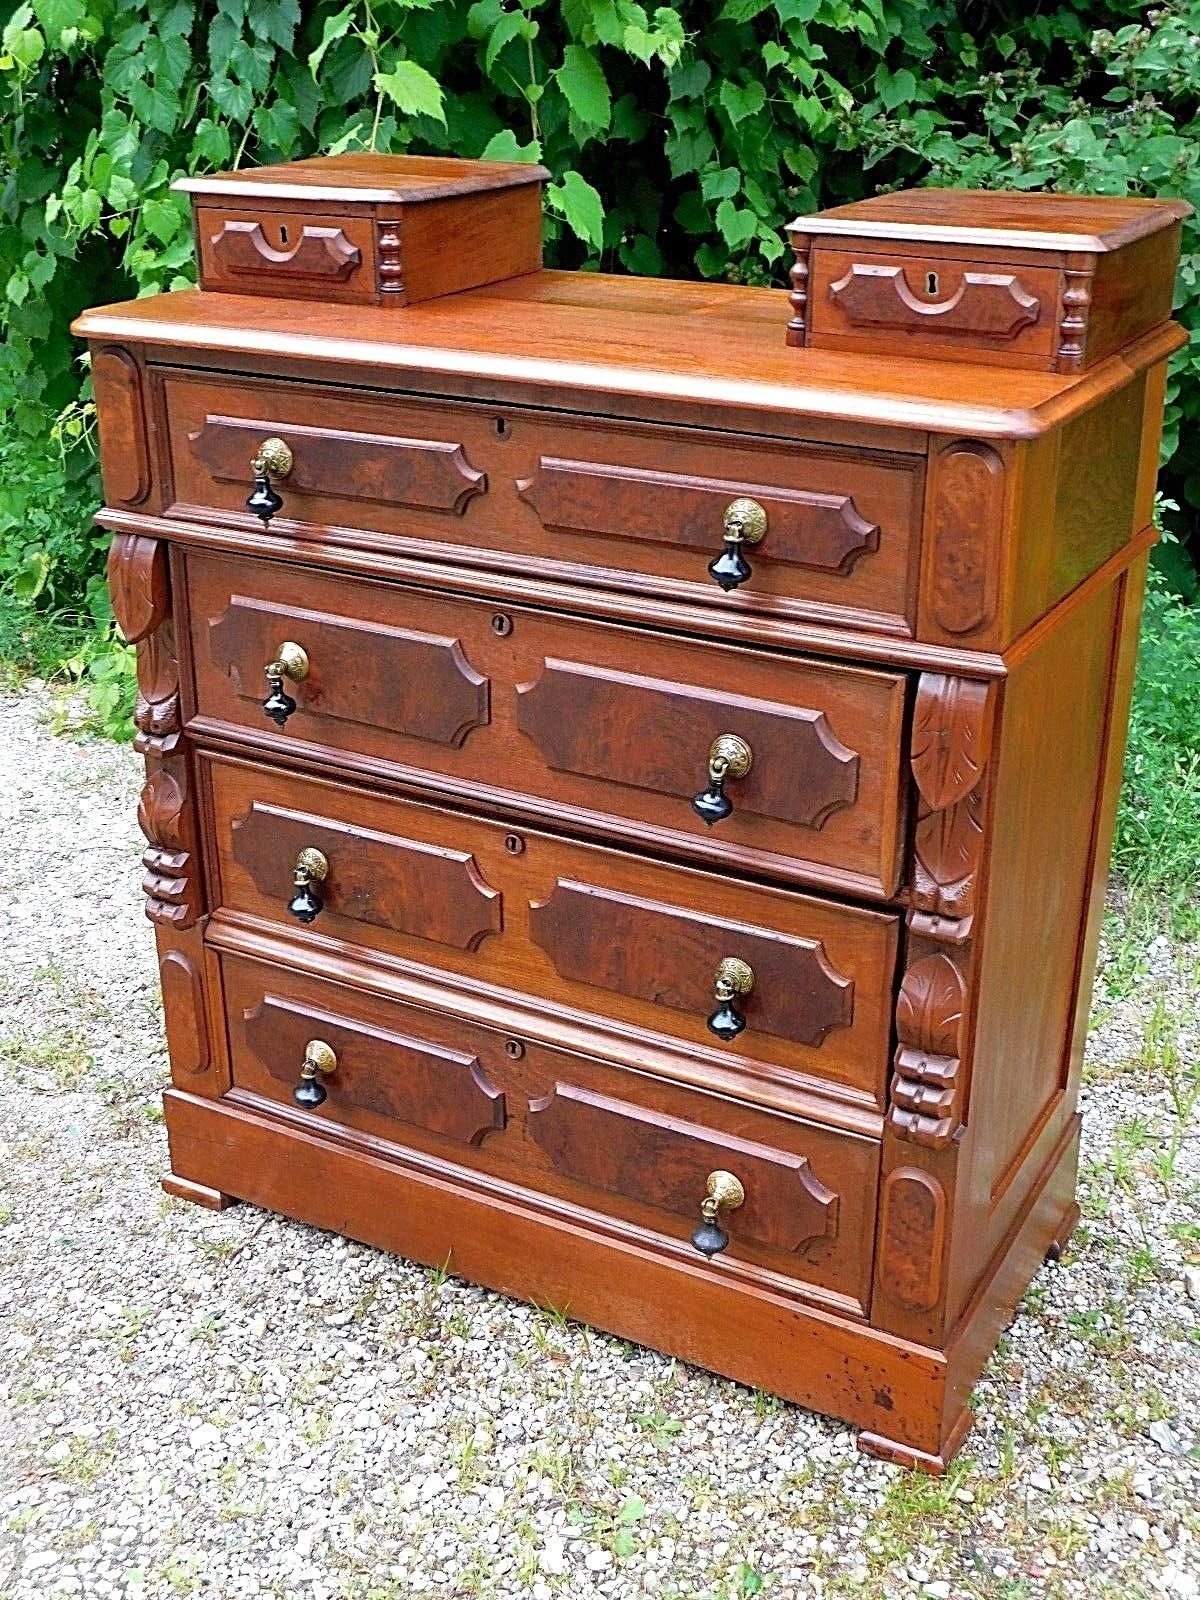 Walnut Antique Victorian Ornate Dresser with hankie drawers